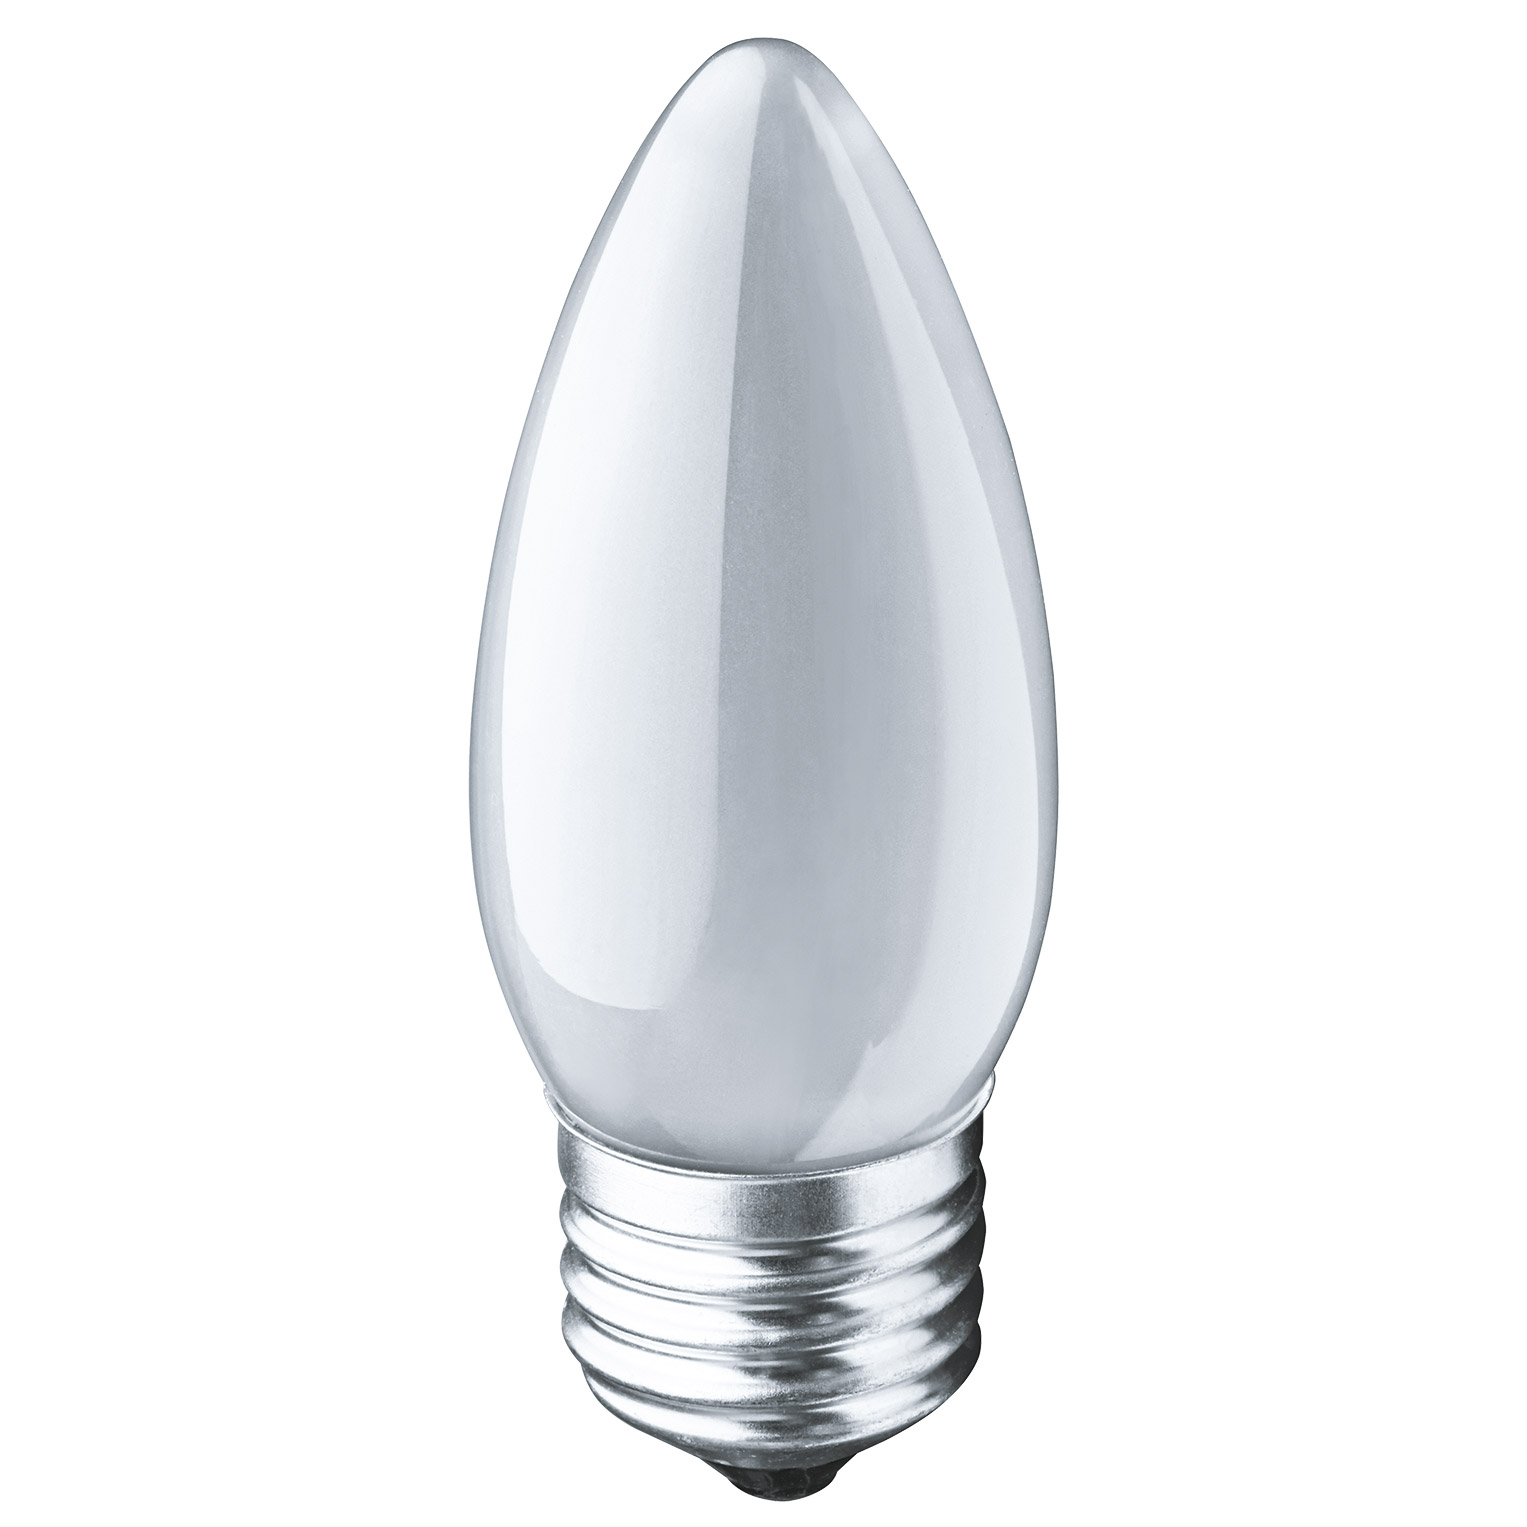 Где купить Лампа накаливания Navigator свеча матовая 60Вт цоколь E27 Navigator 